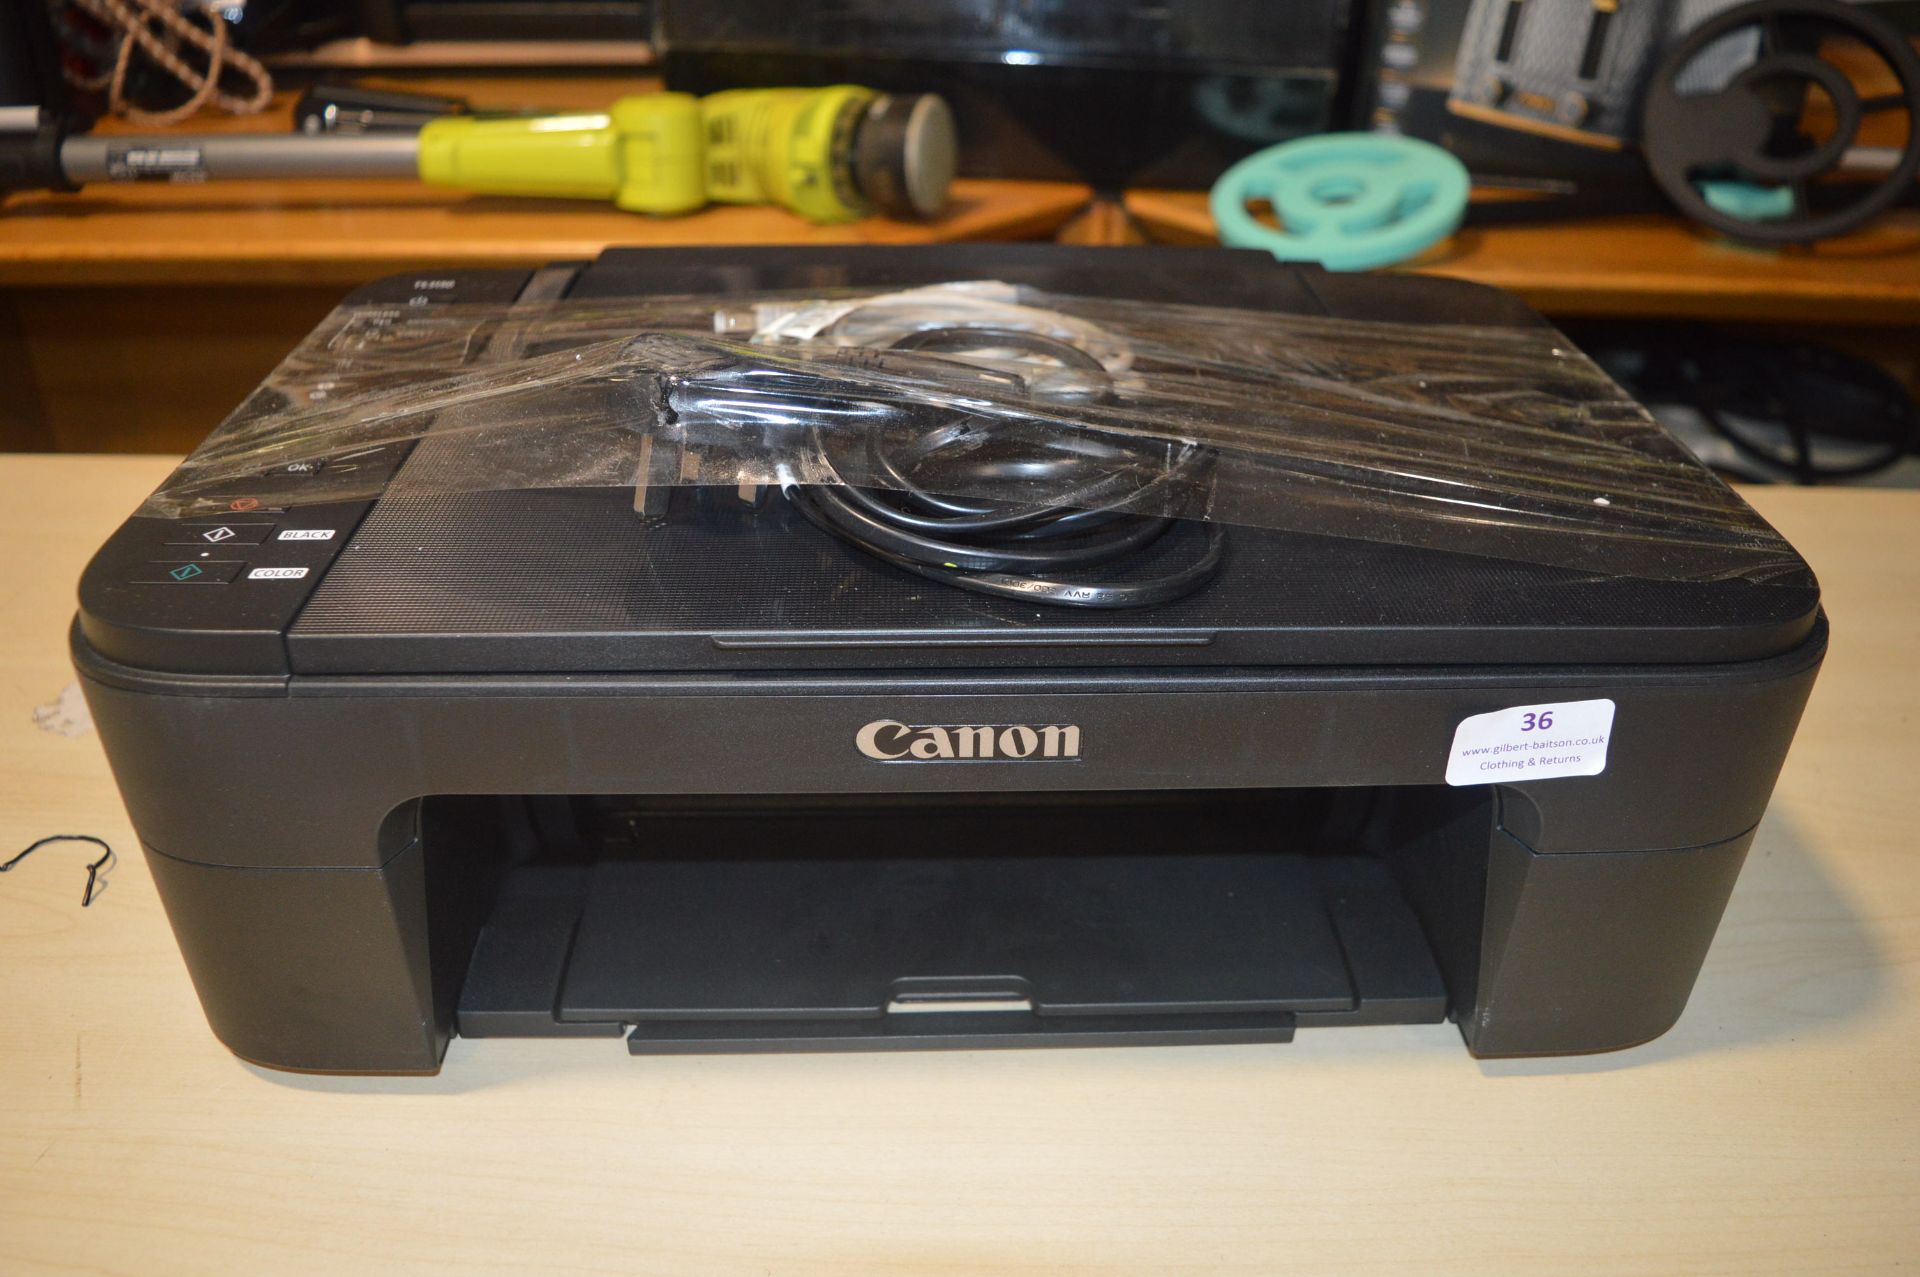 *Canon TS3150 Printer